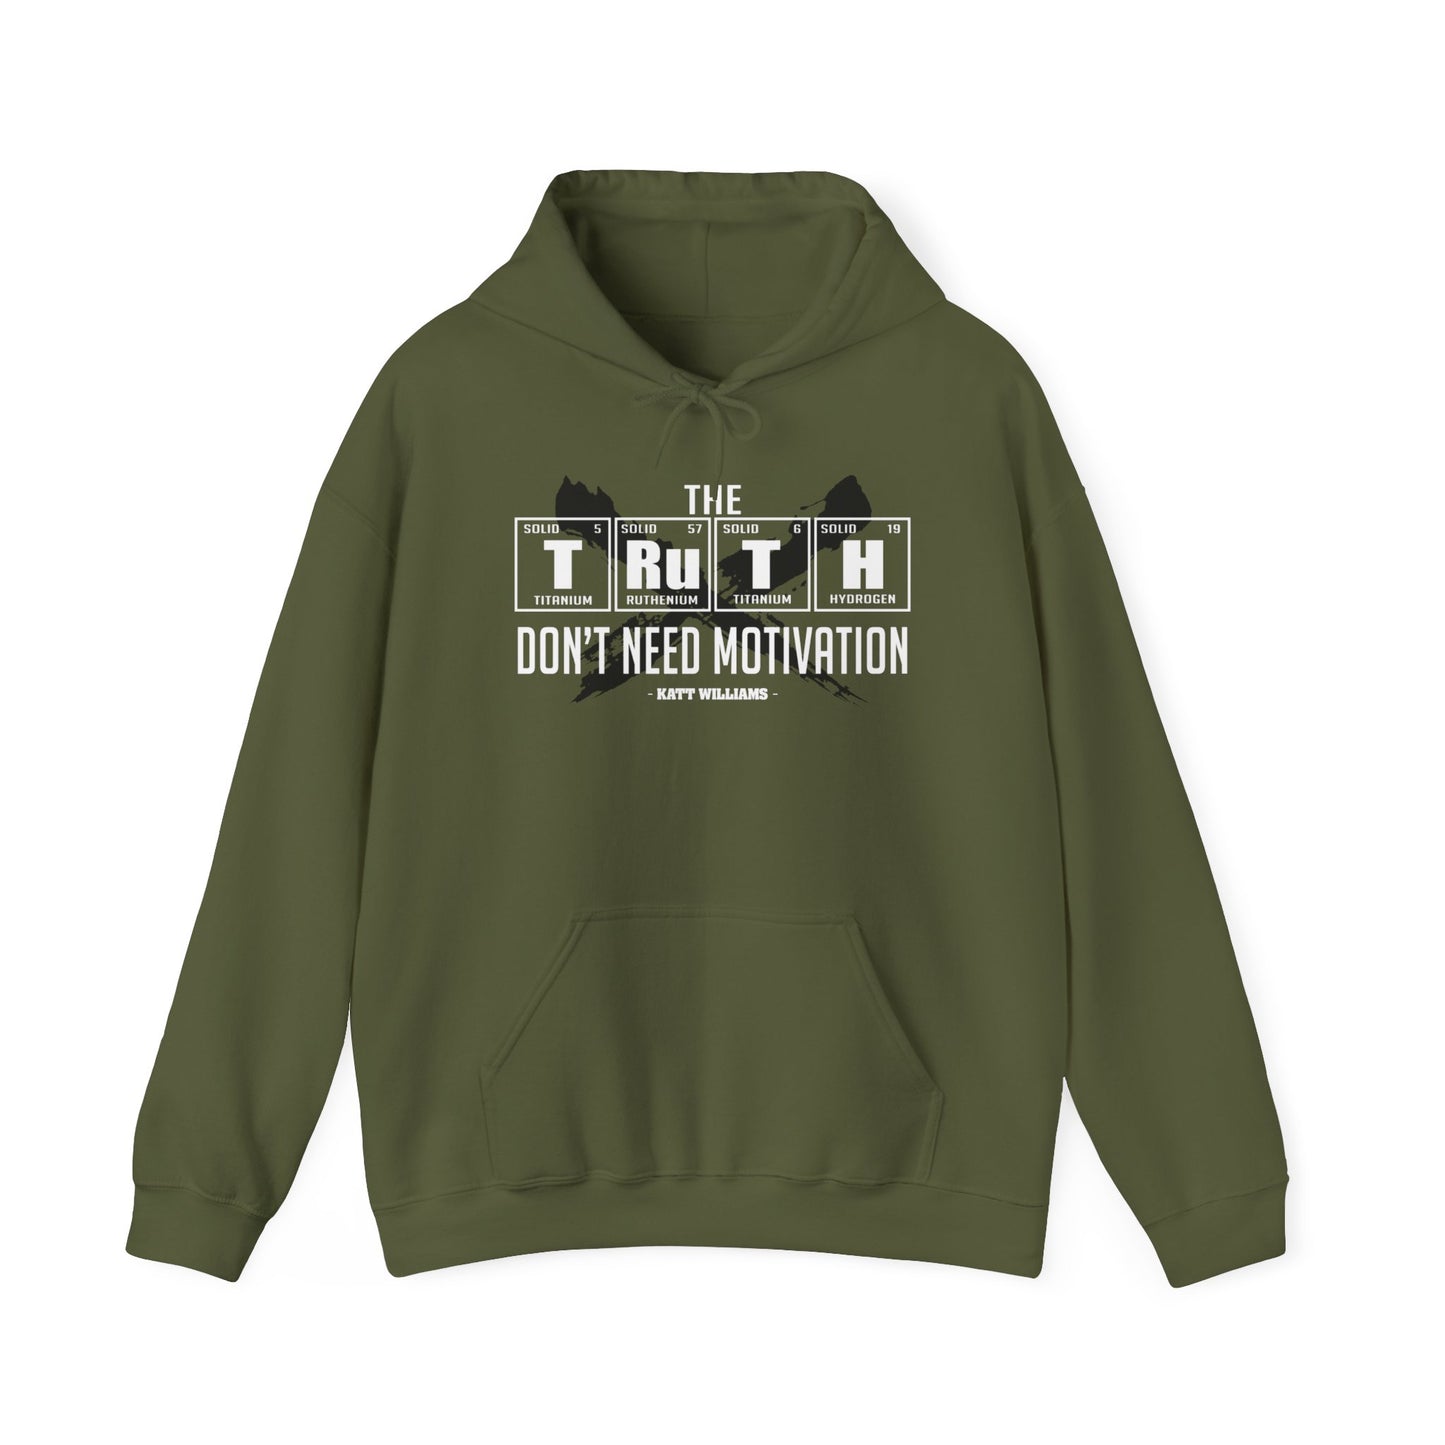 Katt Williams Truth™ Hooded Sweatshirt